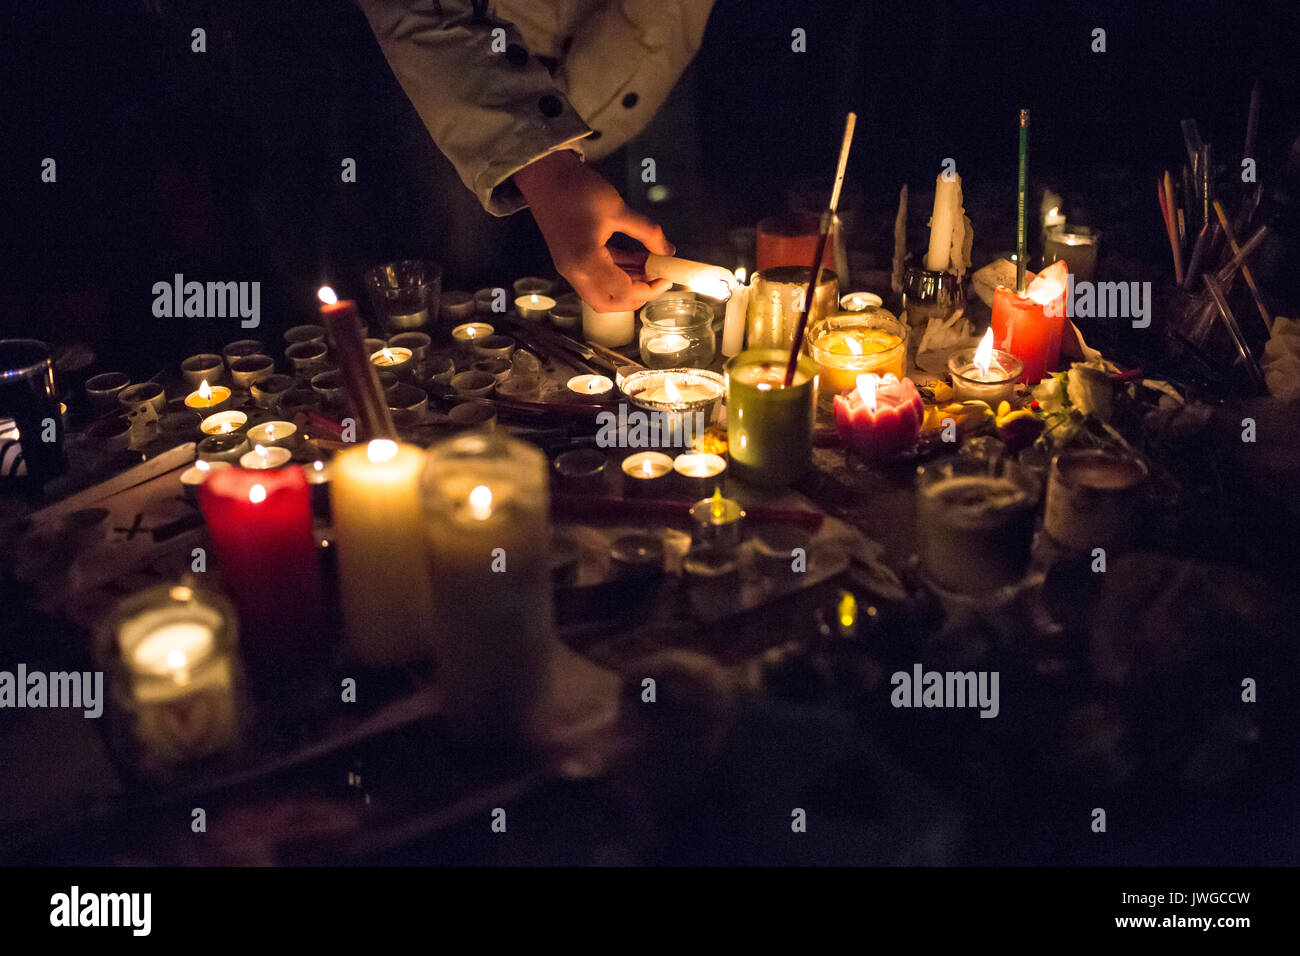 Eine Kerze anzünden. Hommage an die Opfer von Charlie Hebdo Tötung in Paris der 7. Januar 2015. Stockfoto